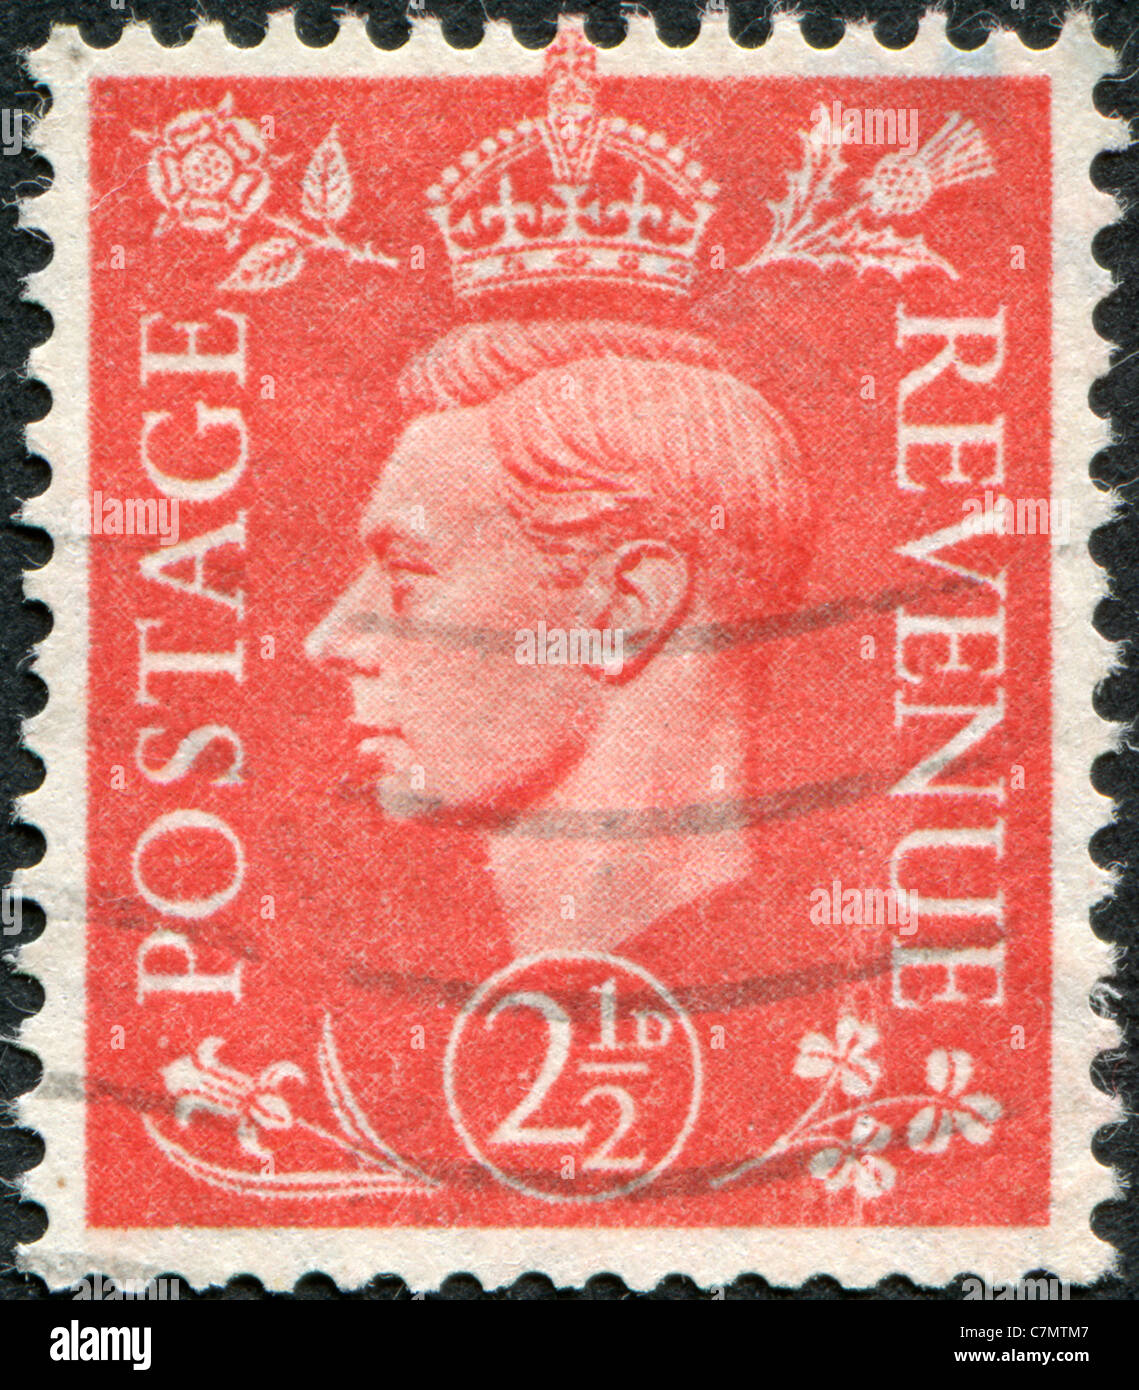 Vereinigtes Königreich - 1951: Eine Briefmarke gedruckt in England, zeigt George VI des Vereinigten Königreichs Stockfoto